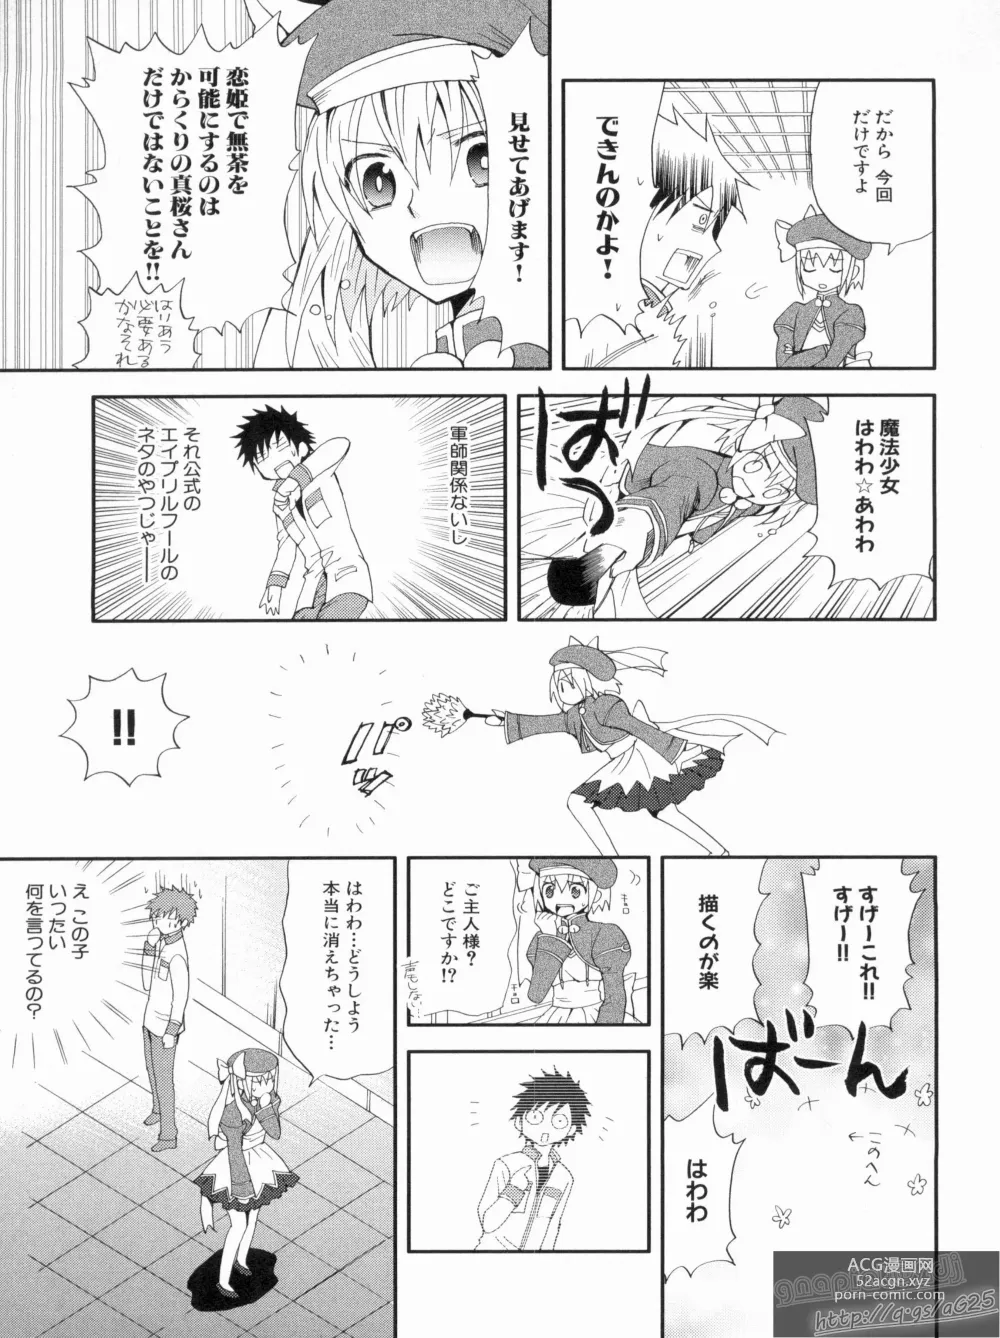 Page 153 of manga Shin Koihime Musou Gaishi Saiten VOL.2